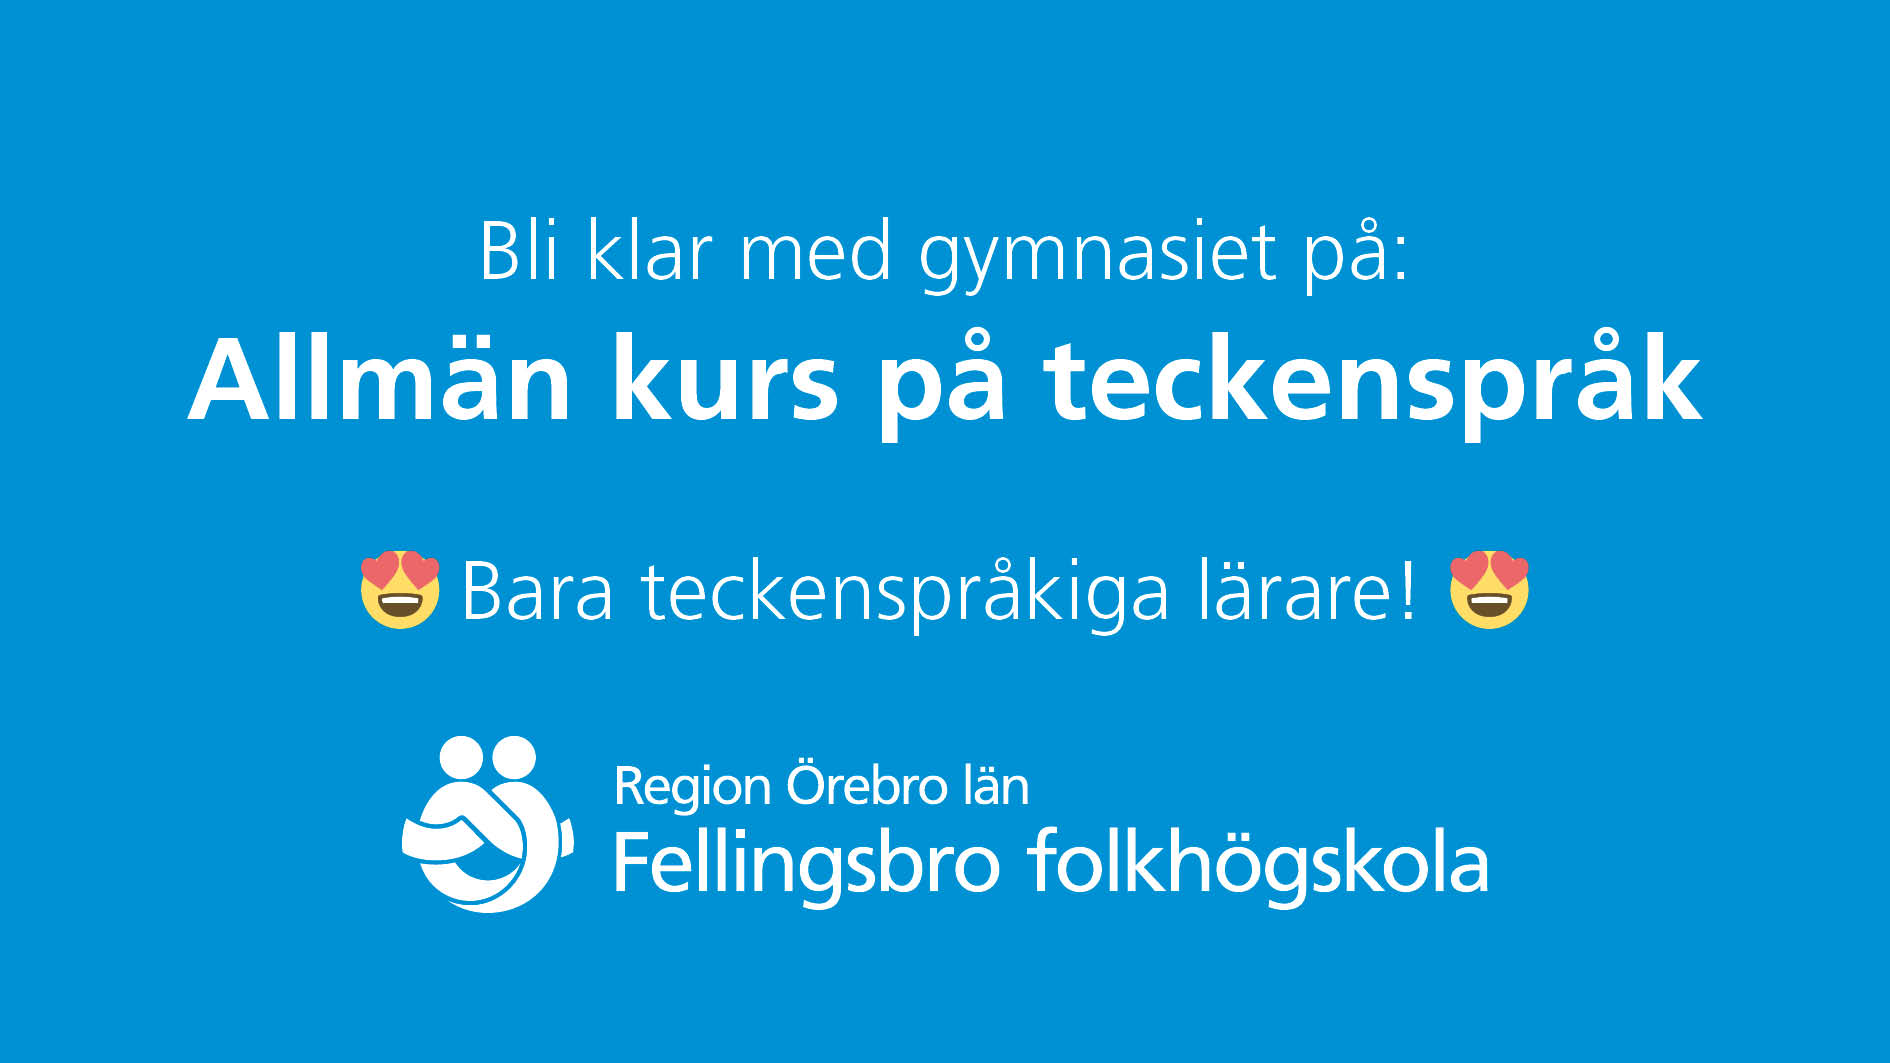 Vit text på blå bakgrund: "Bli klar med gymnasiet på Allmän kurs på teckenspråk. Bara teckenspråkiga lärare." Hjärtöga-emoji x 2. Logotyp Region Örebro län.